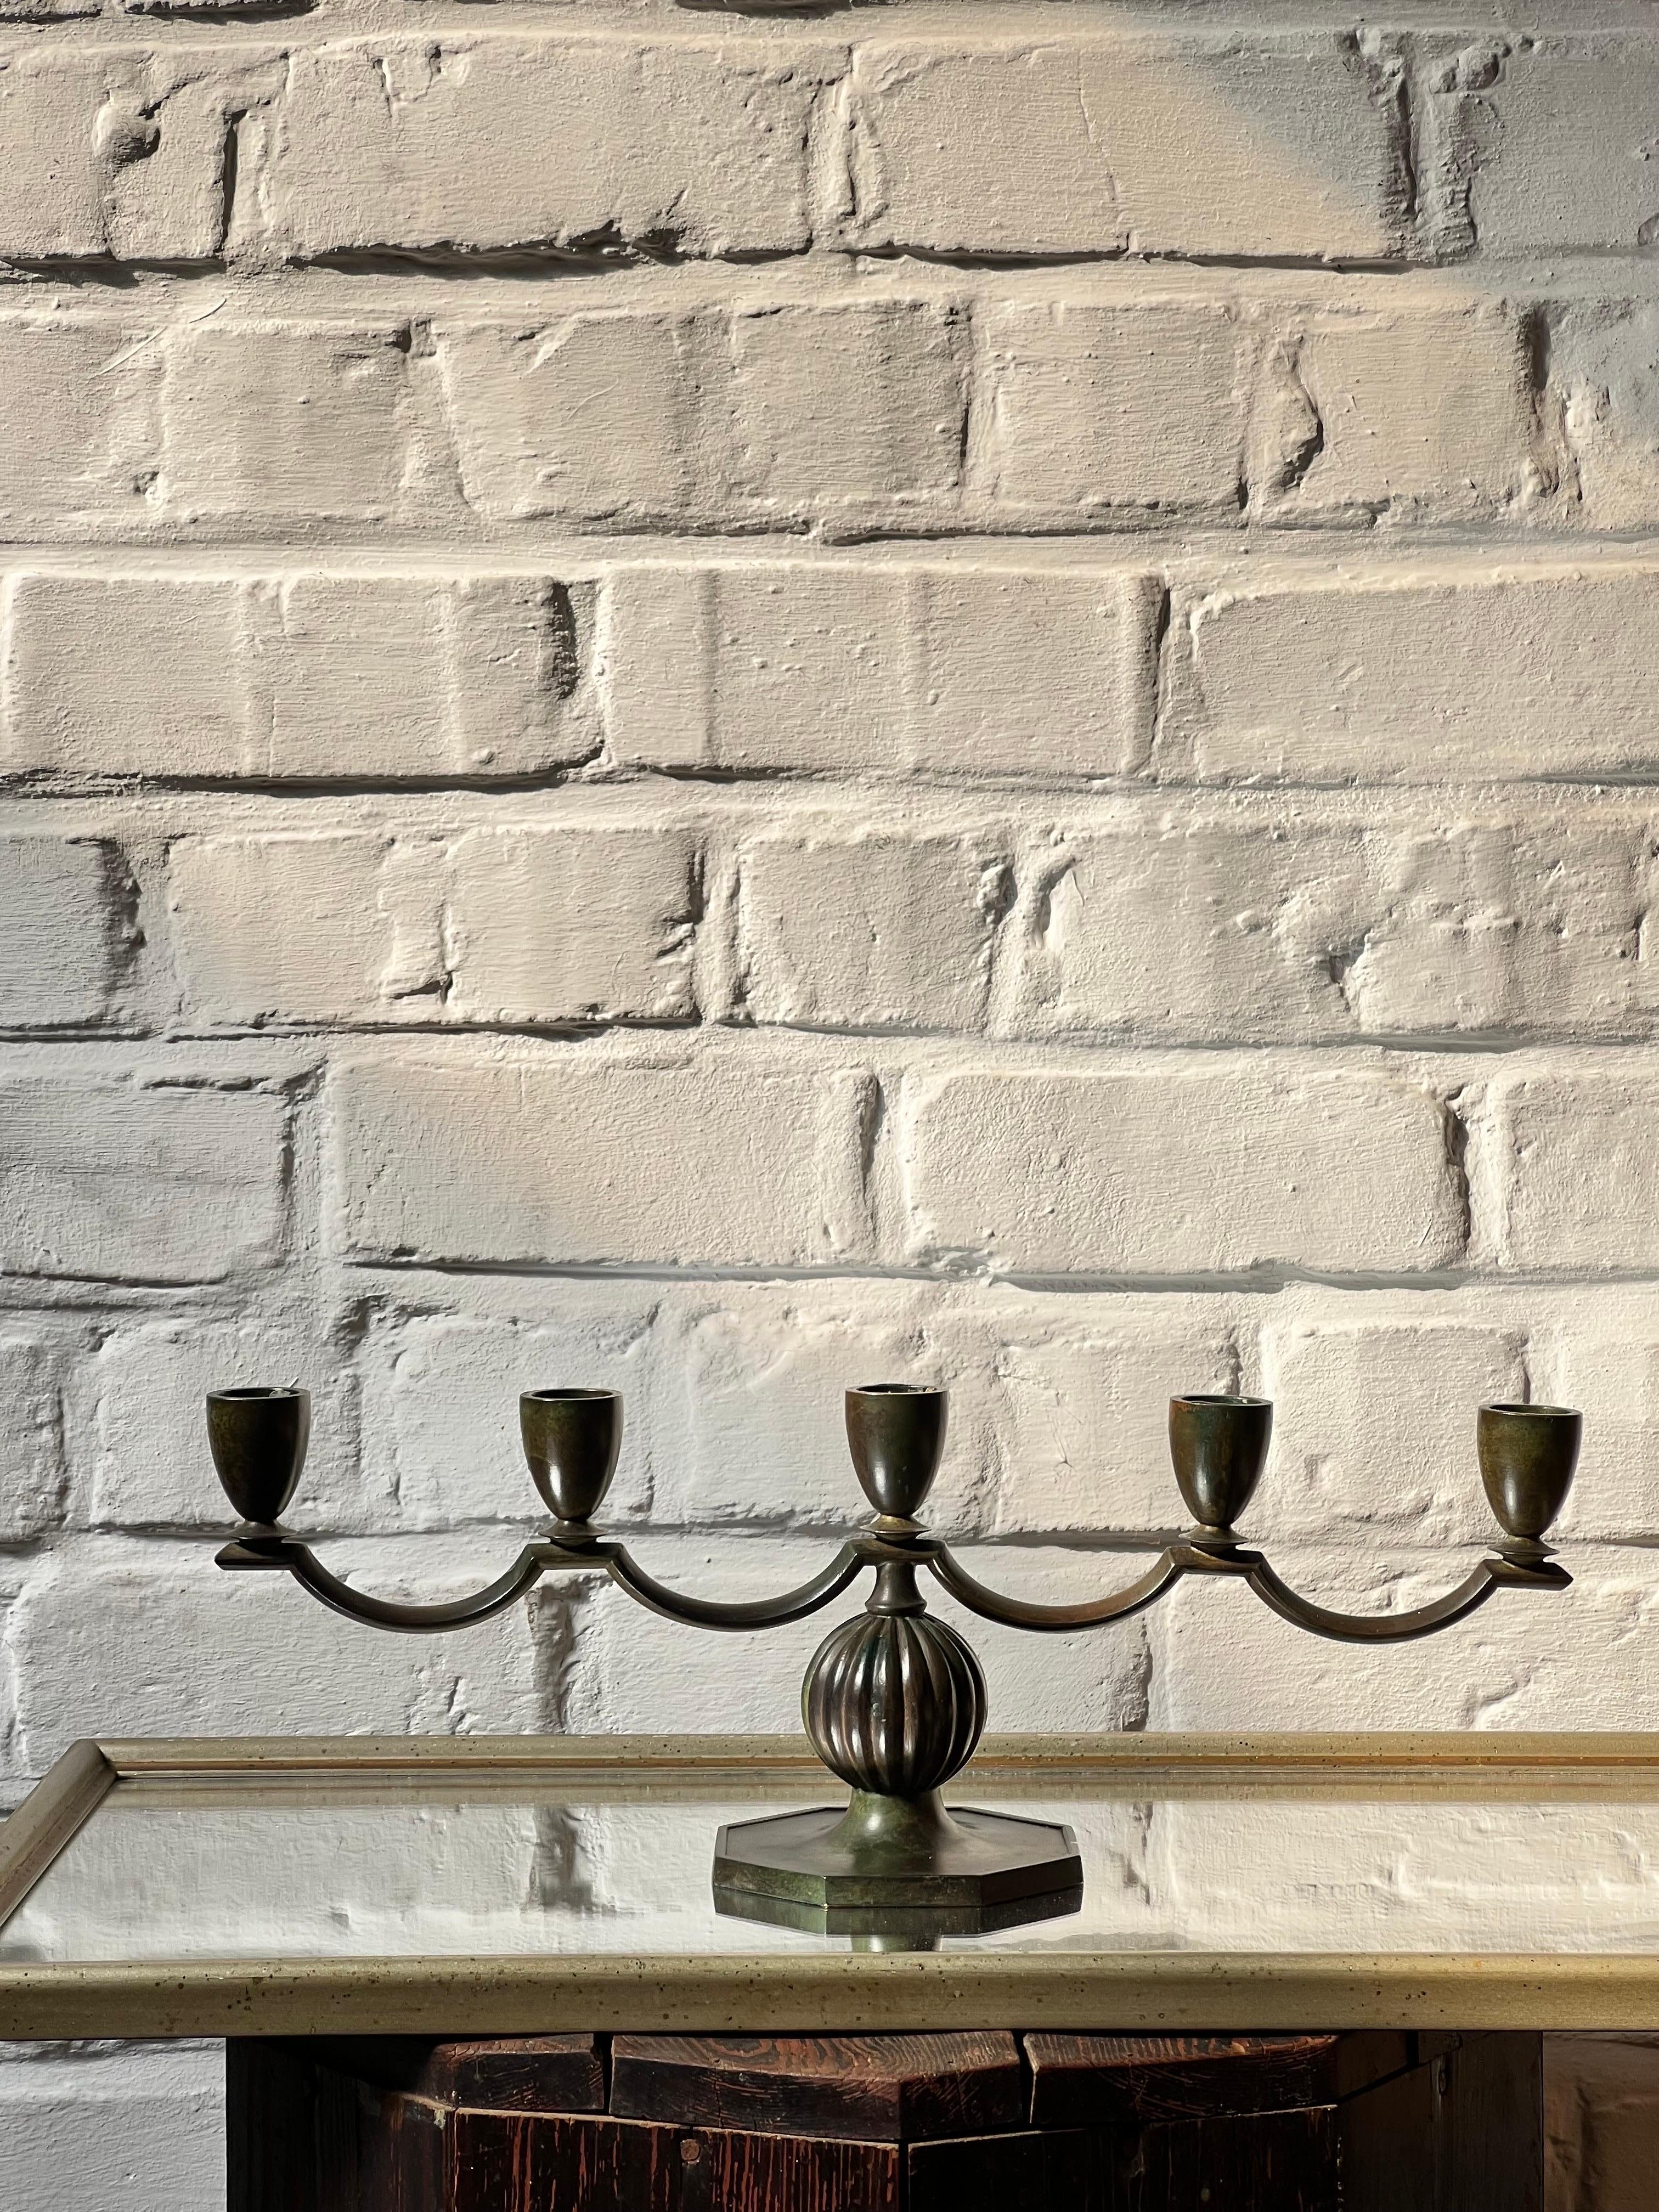 Eleganter dekorativer Kerzenleuchter aus patinierter Bronze für 5 Kerzen, hergestellt in Schweden in den 1930er Jahren von GAB Brons. Teil des schwedischen Gnadengebiets. So einen Kandelaber sieht man nicht oft. Mit etwas Patina und dekorativen